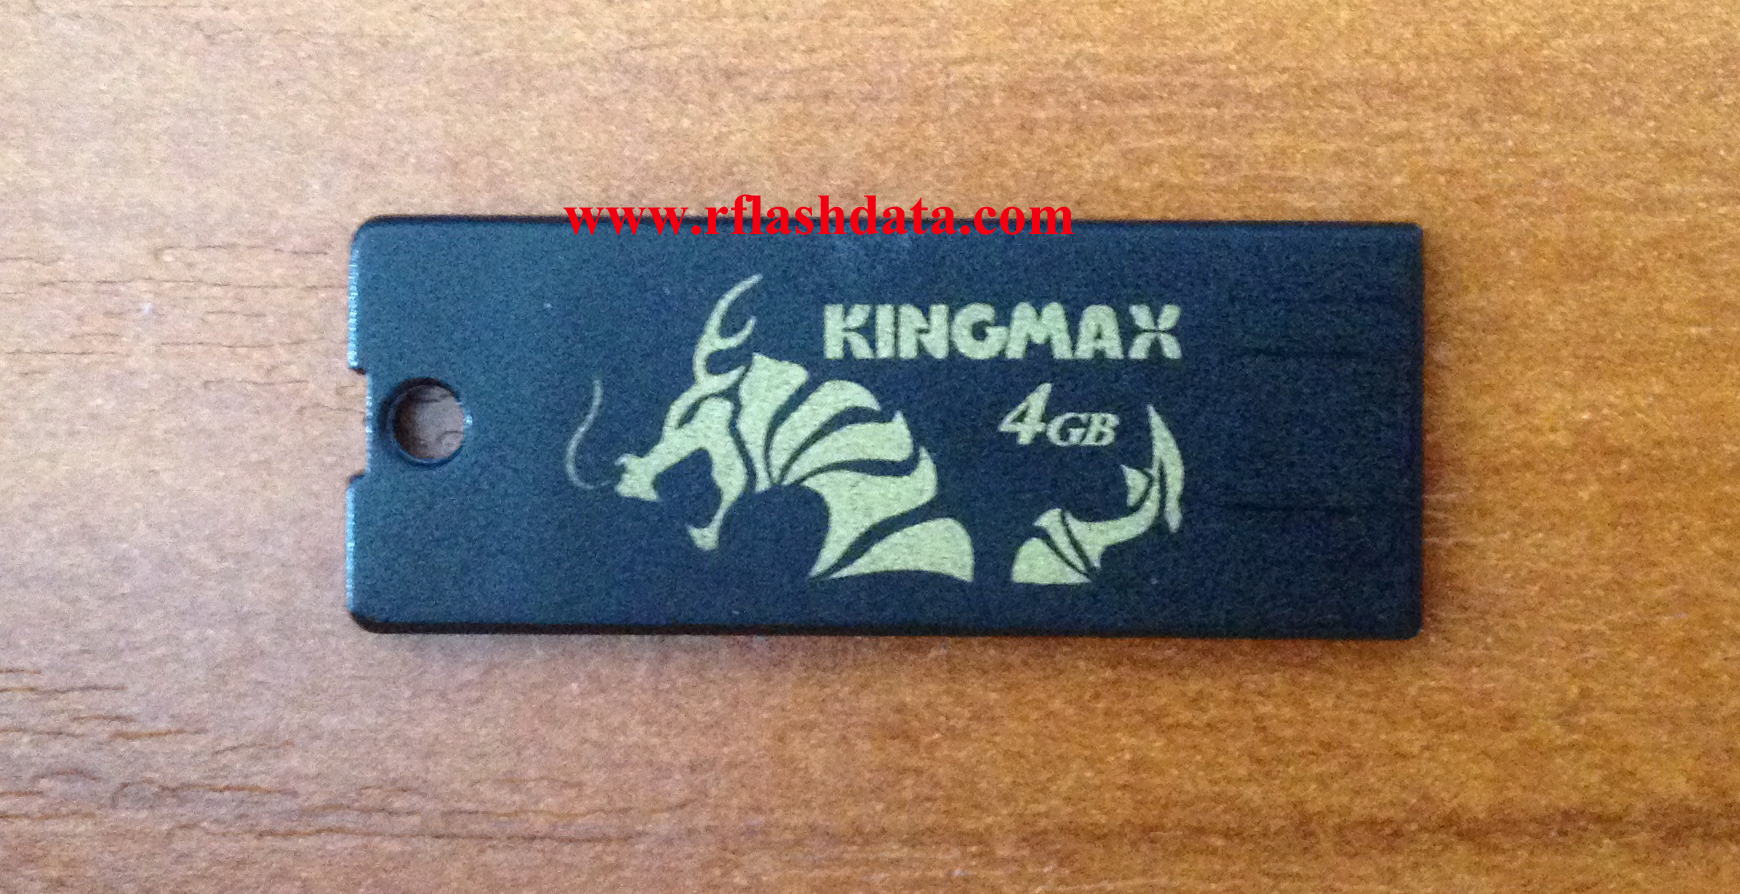 Kingmax USB flash drive